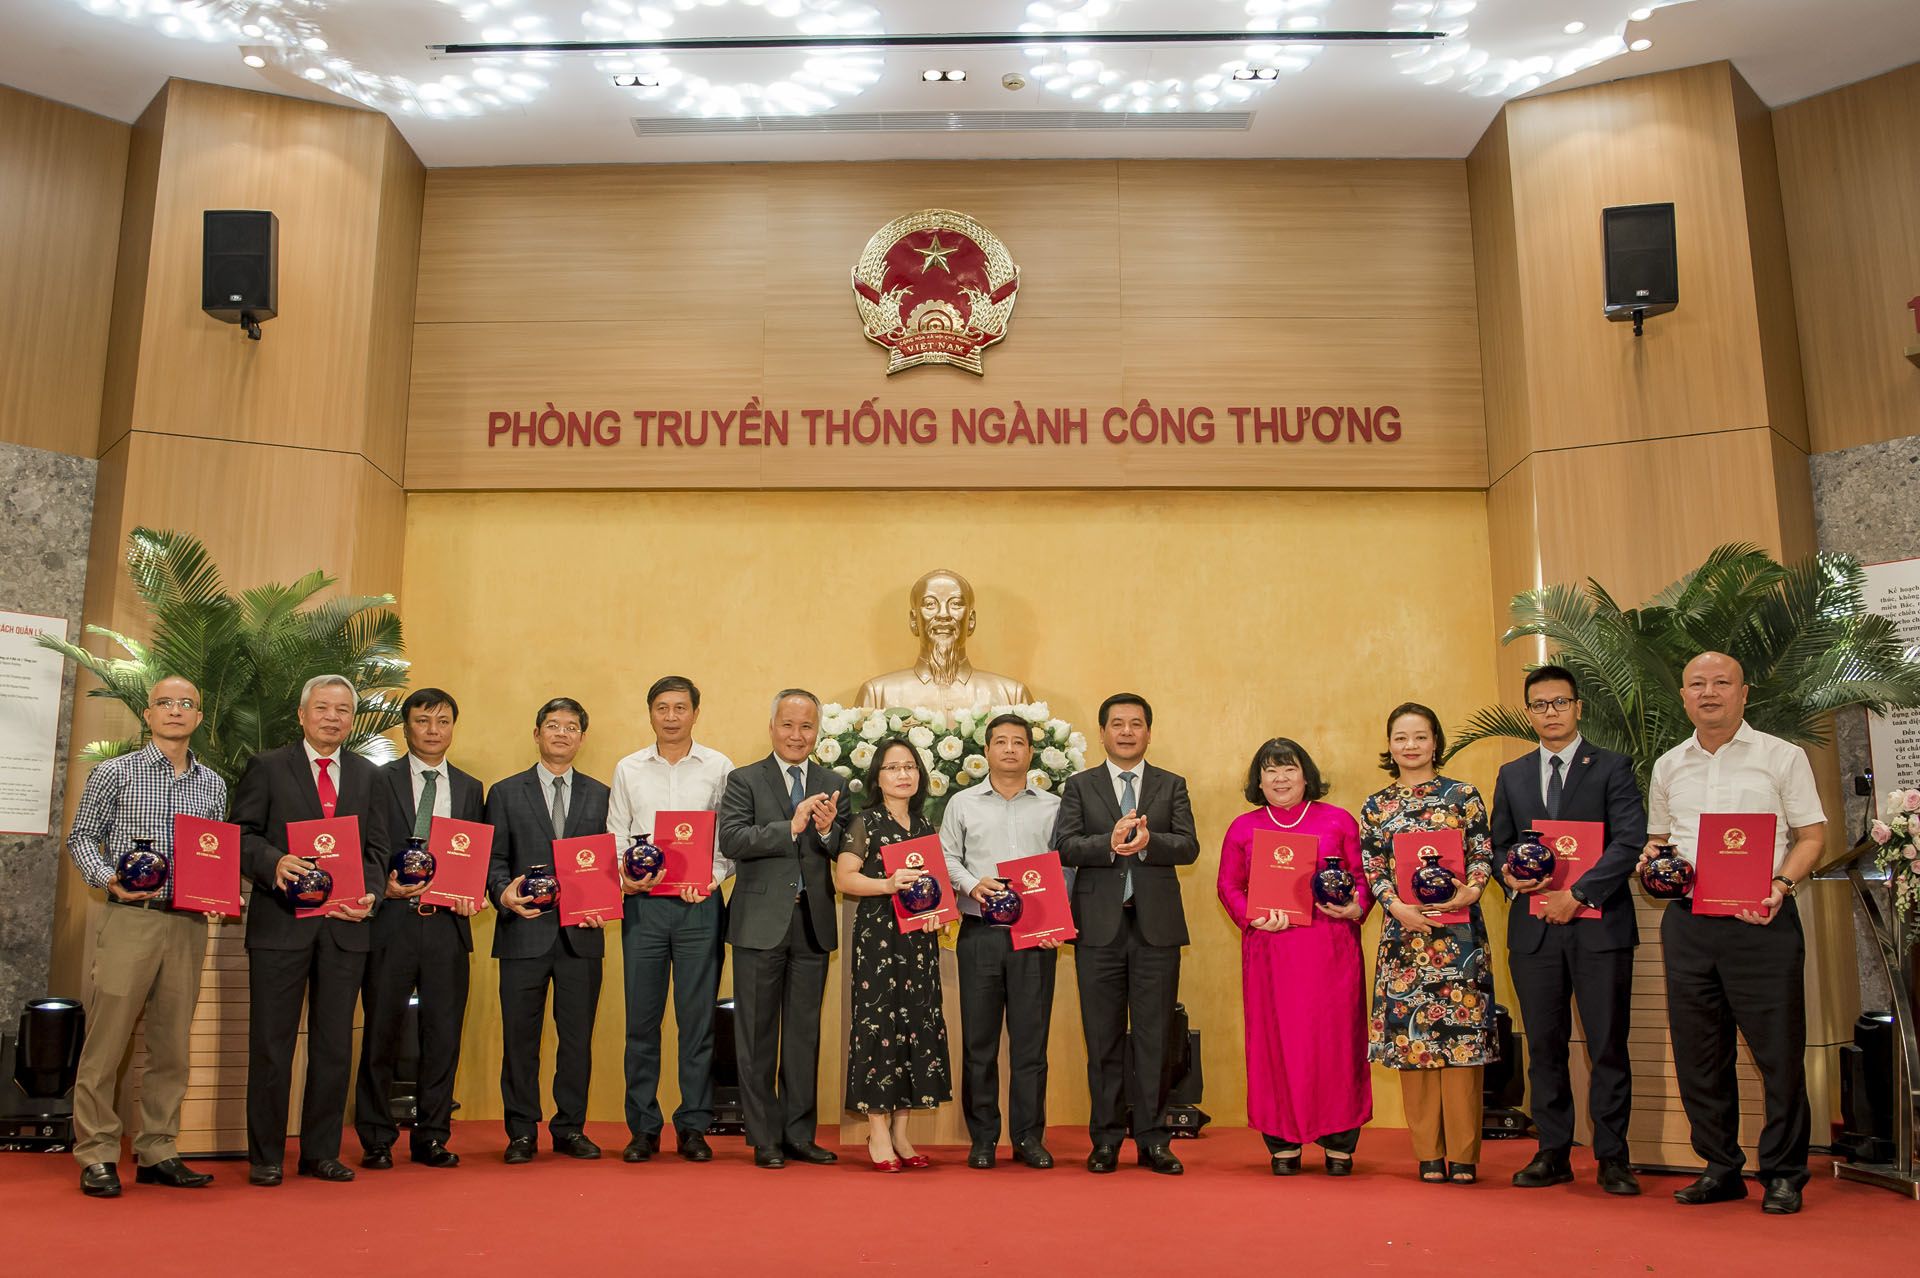 Bộ trưởng Nguyễn Hồng Diên và Thứ trưởng Trần Quốc Khánh trao thư cảm ơn cho các đại diện tập thể, cá nhân có đóng góp xây dựng Phòng Truyền thống ngành Công Thương